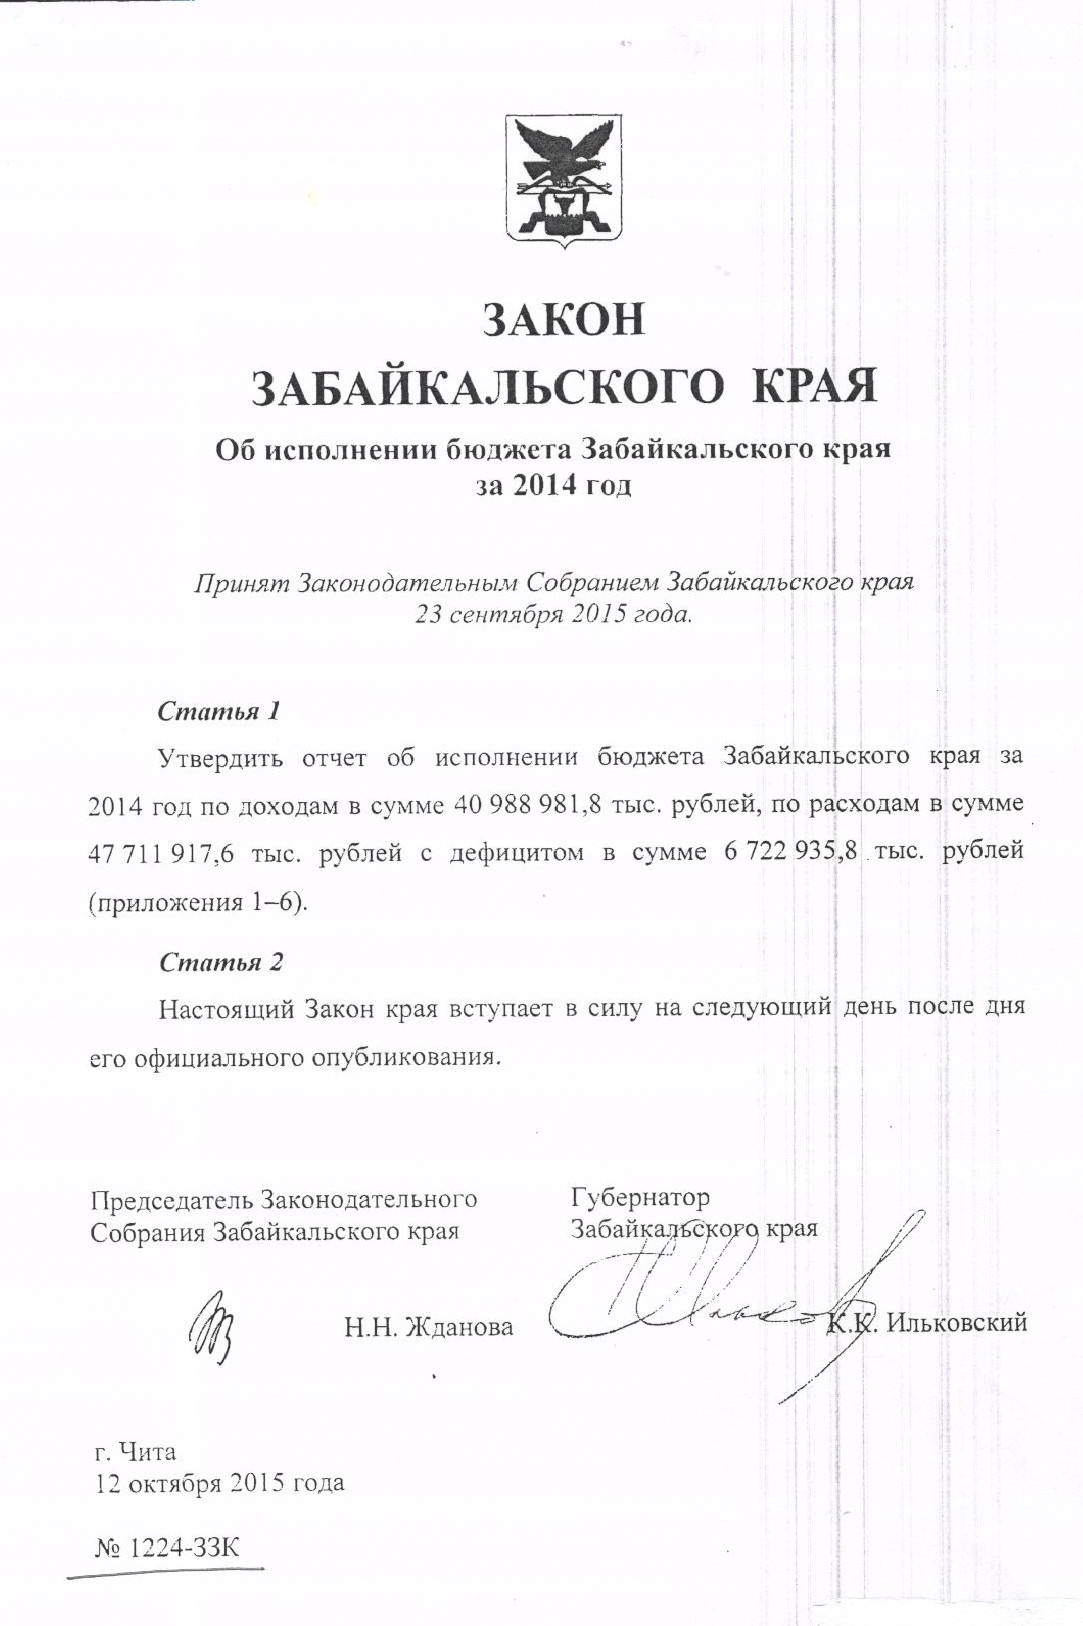 Закон № 1224-ЗЗК "Об исполнении бюджета Забайкальского края за 2014 год"